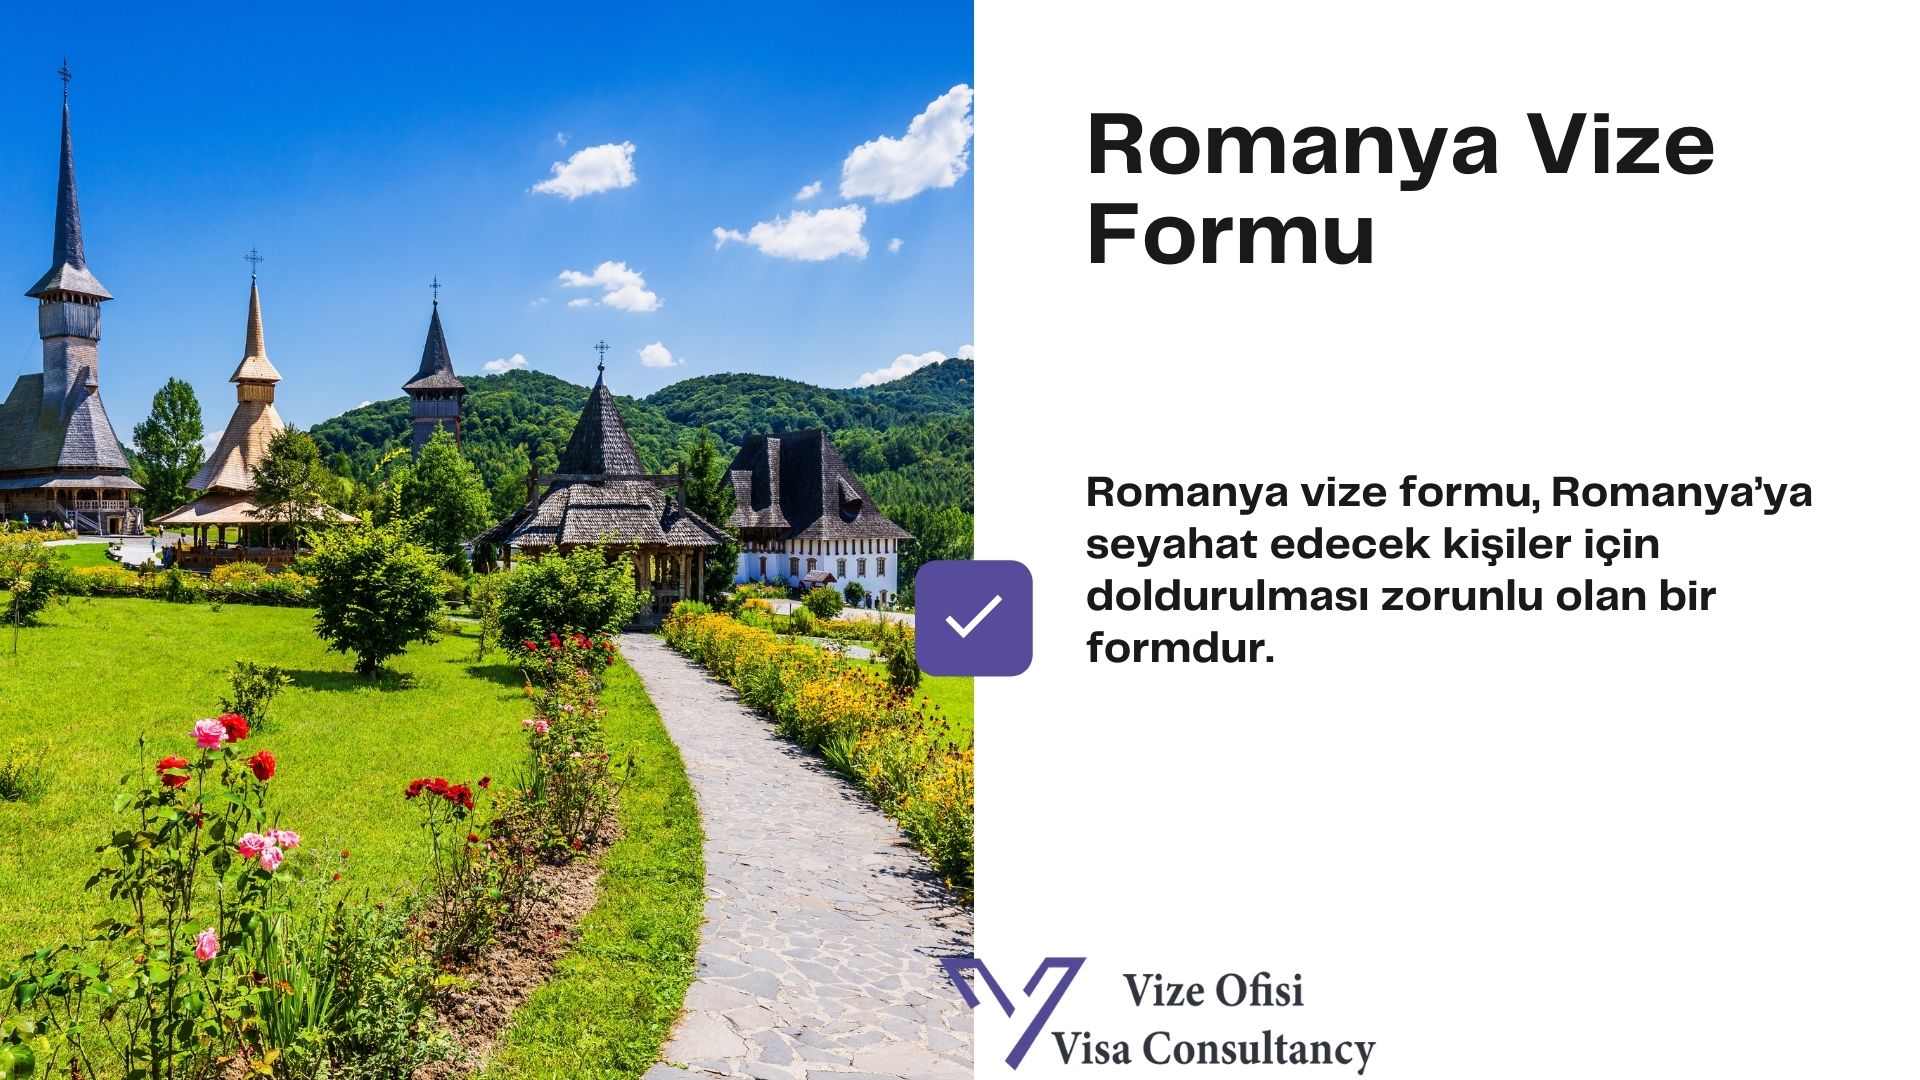 Romanya Vize Form ve Dilekçe 2021